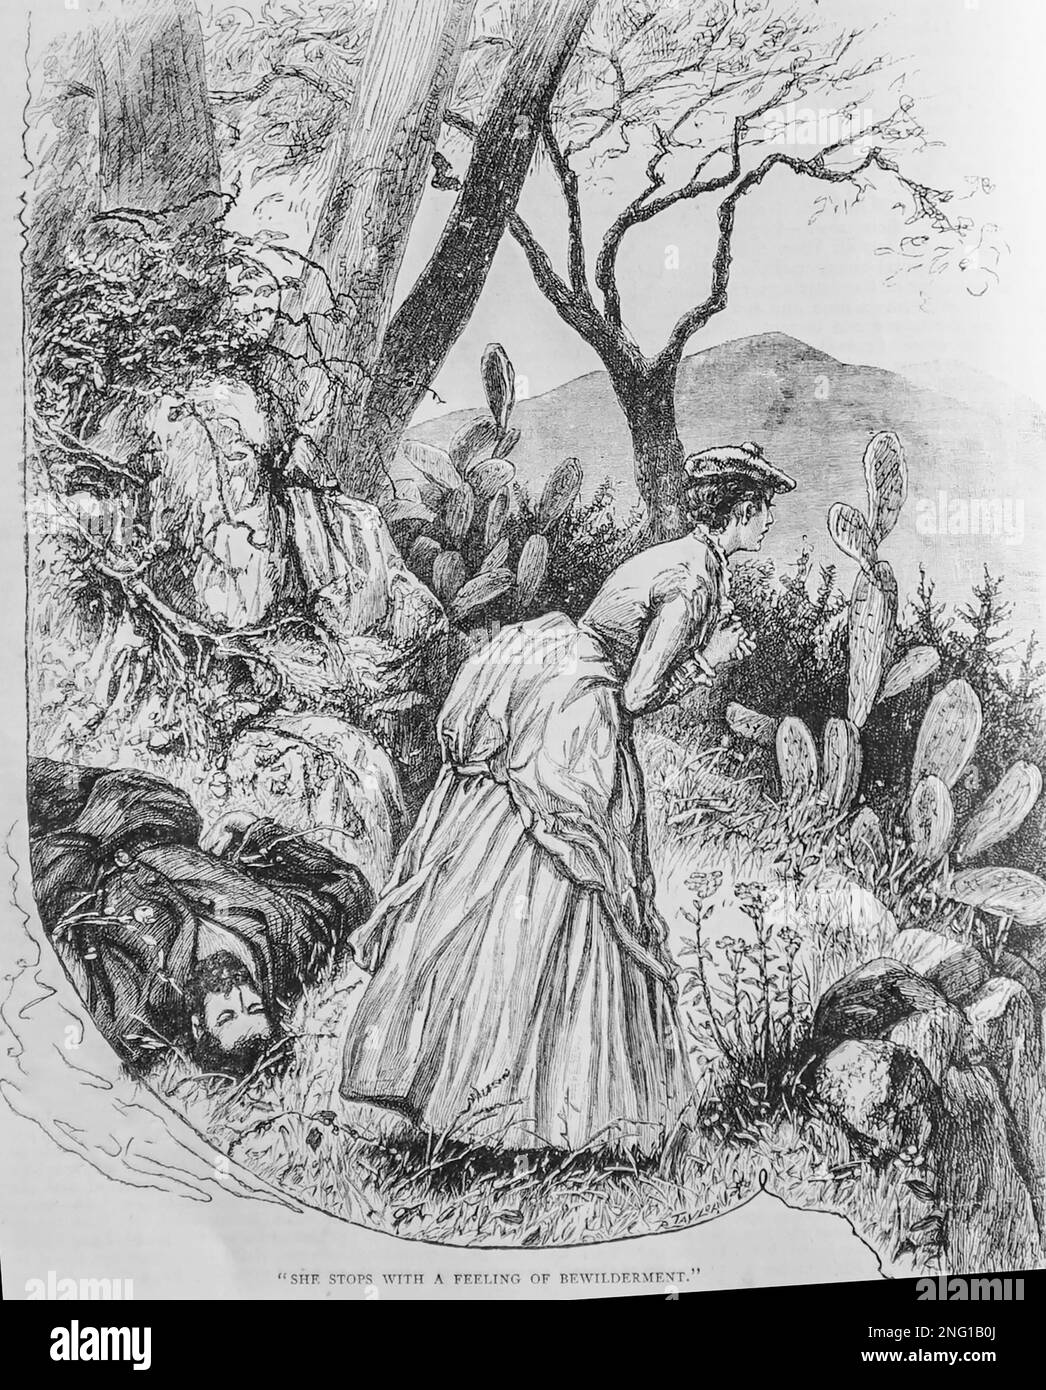 Un croquis de 19th siècle d'une jeune femme debout à côté de son père inconscient, dans la campagne Corse comme elle réfléchit à ses options pour obtenir de l'aide, du Livre des filles de 1888. Banque D'Images